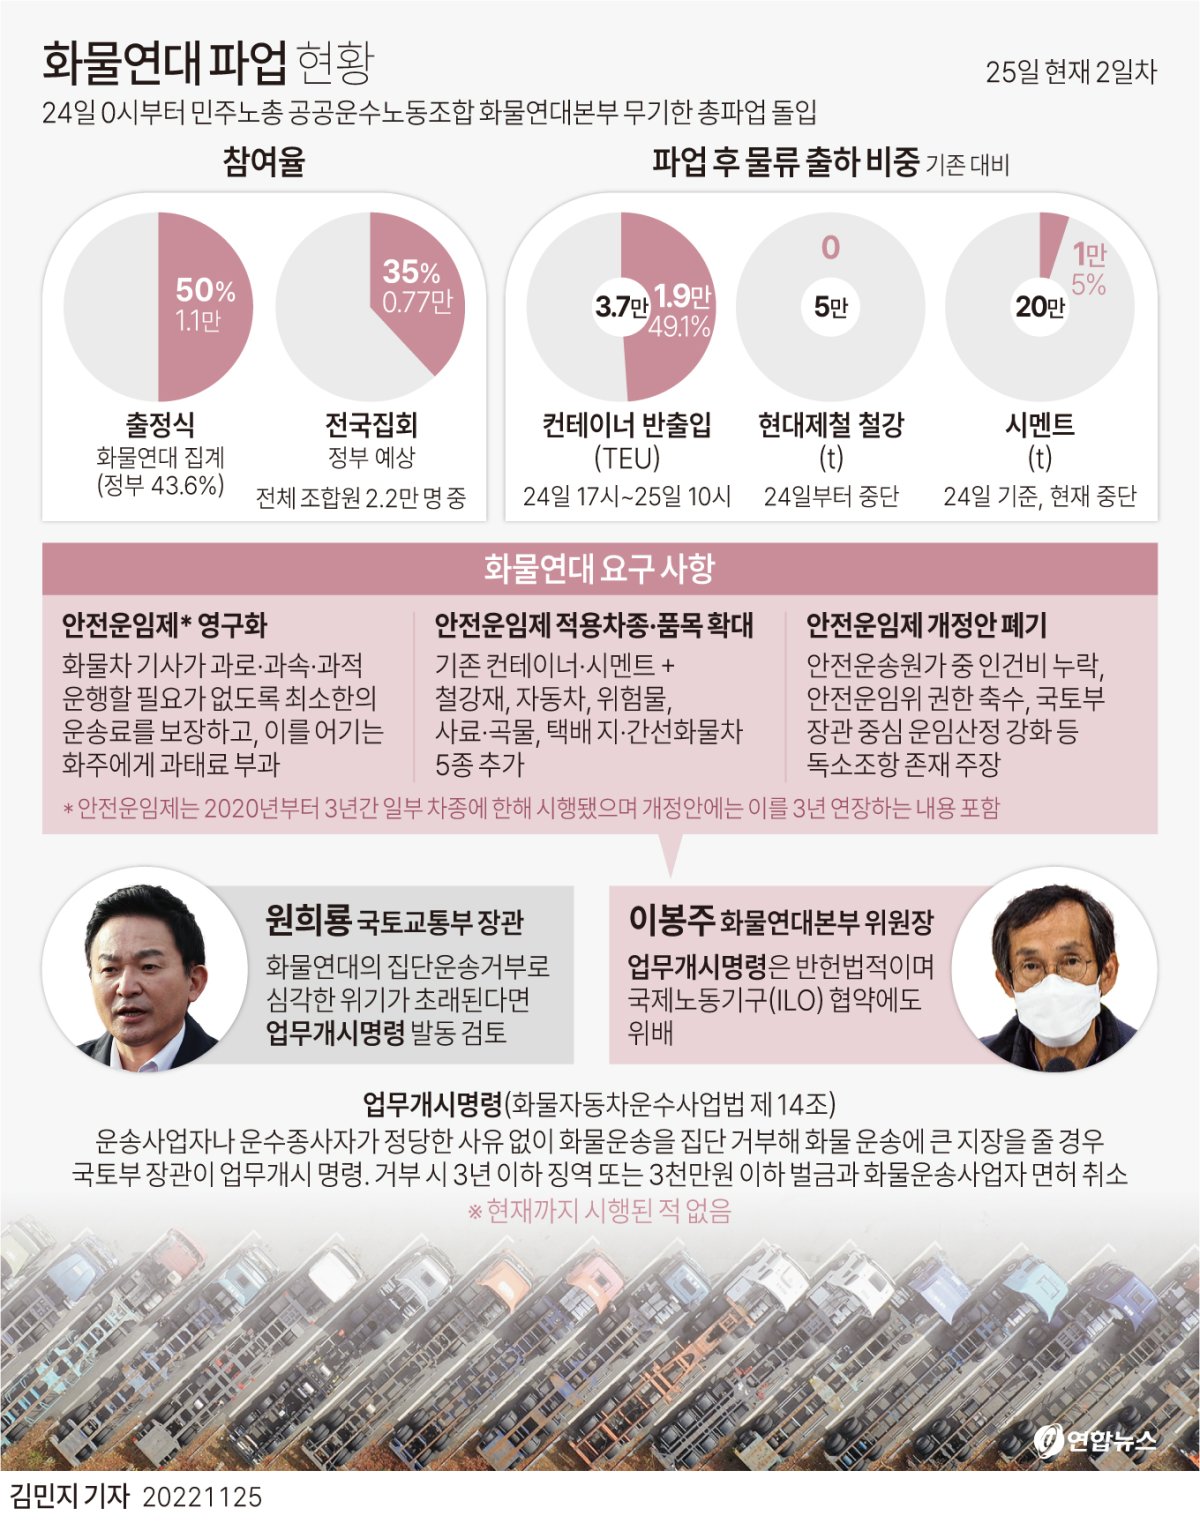 [그래픽] 화물연대 파업 현황